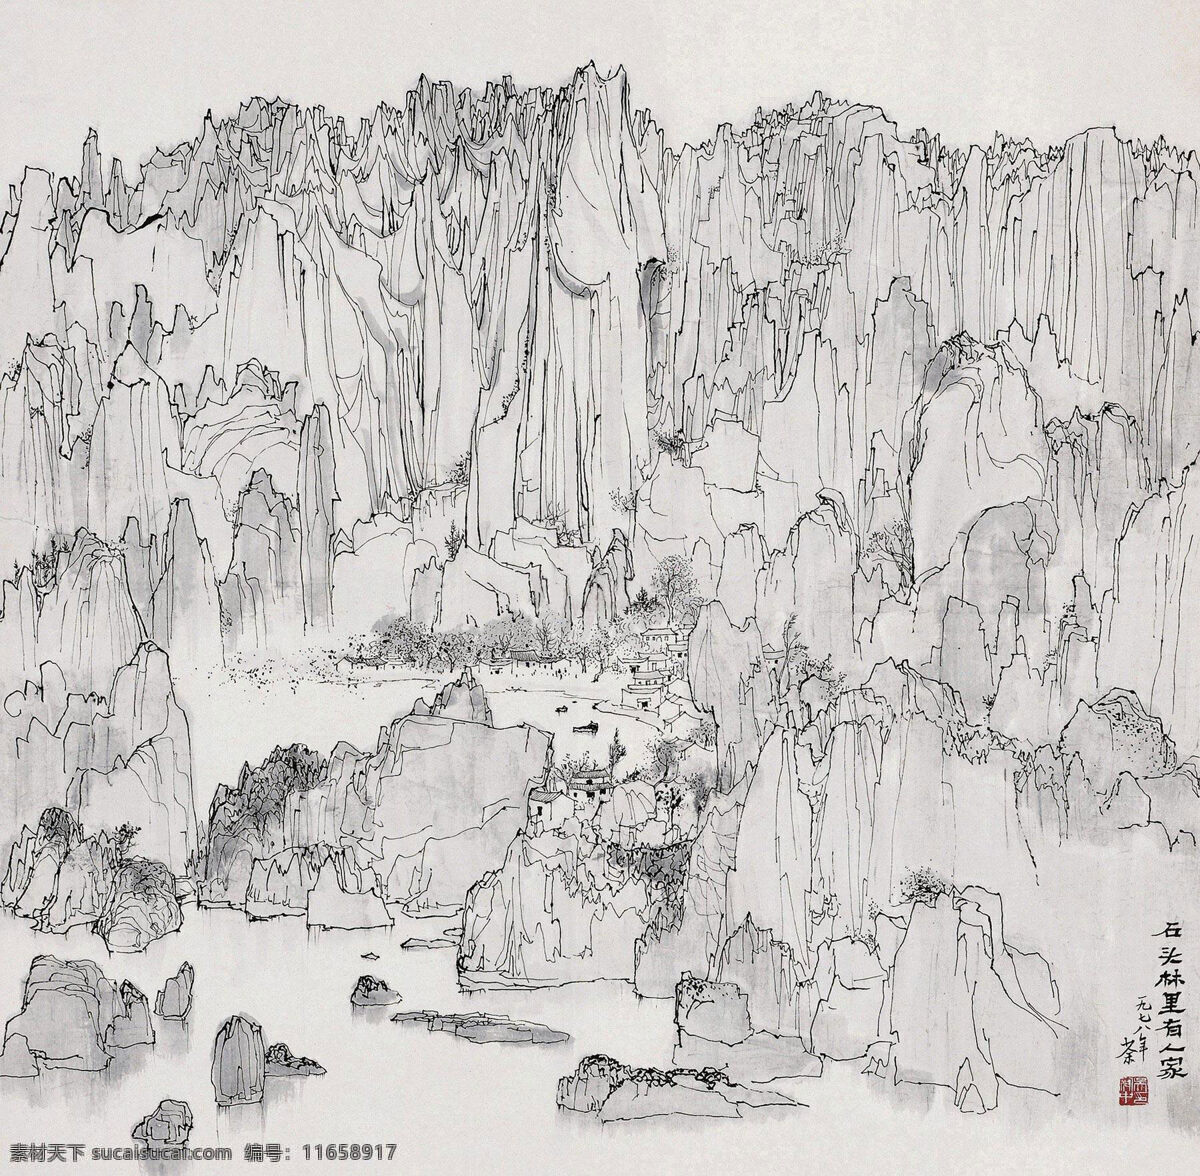 吴冠中 国画 石头 林里 有人 家 线条 水墨 当代 写意 石头林 文化艺术 绘画书法